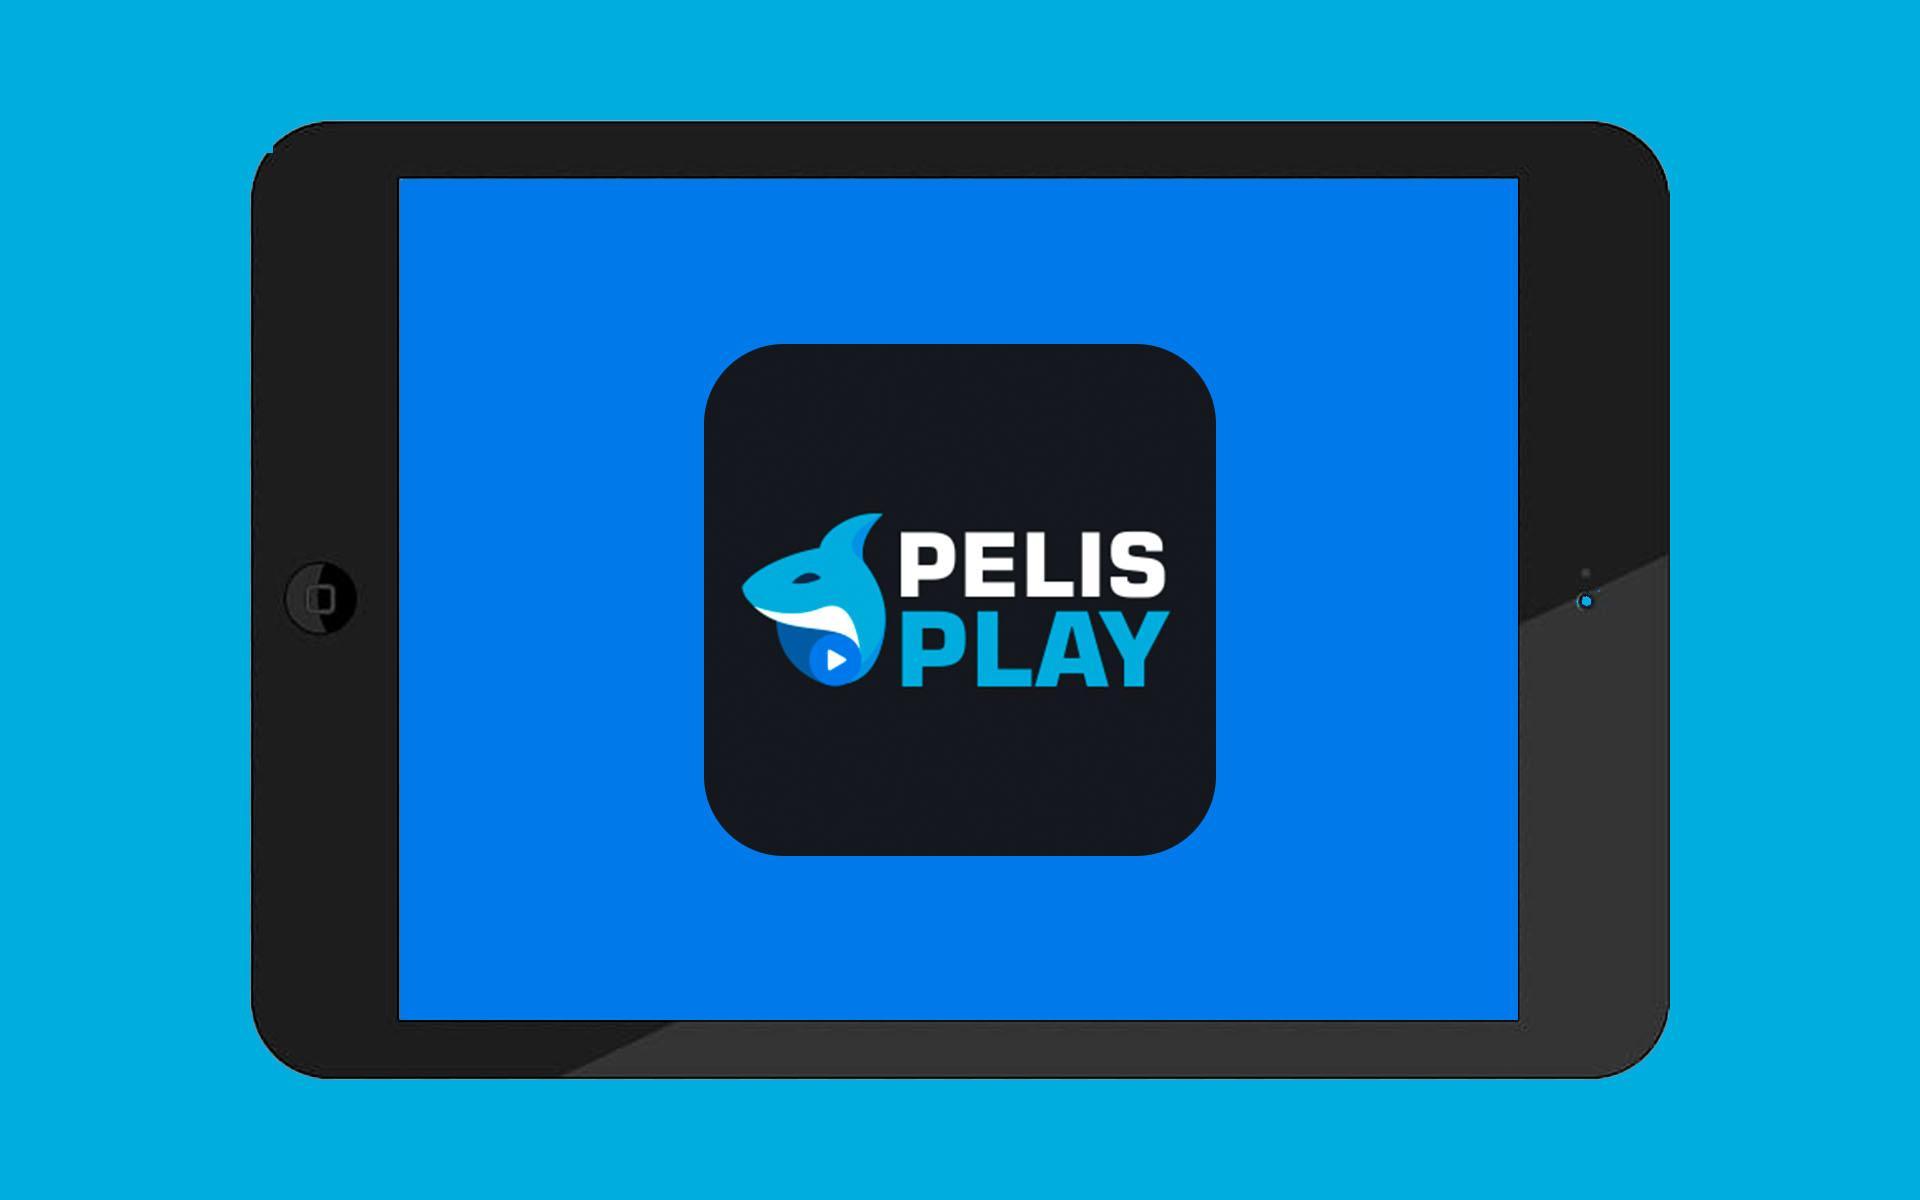 Pelis play logo on a tablet